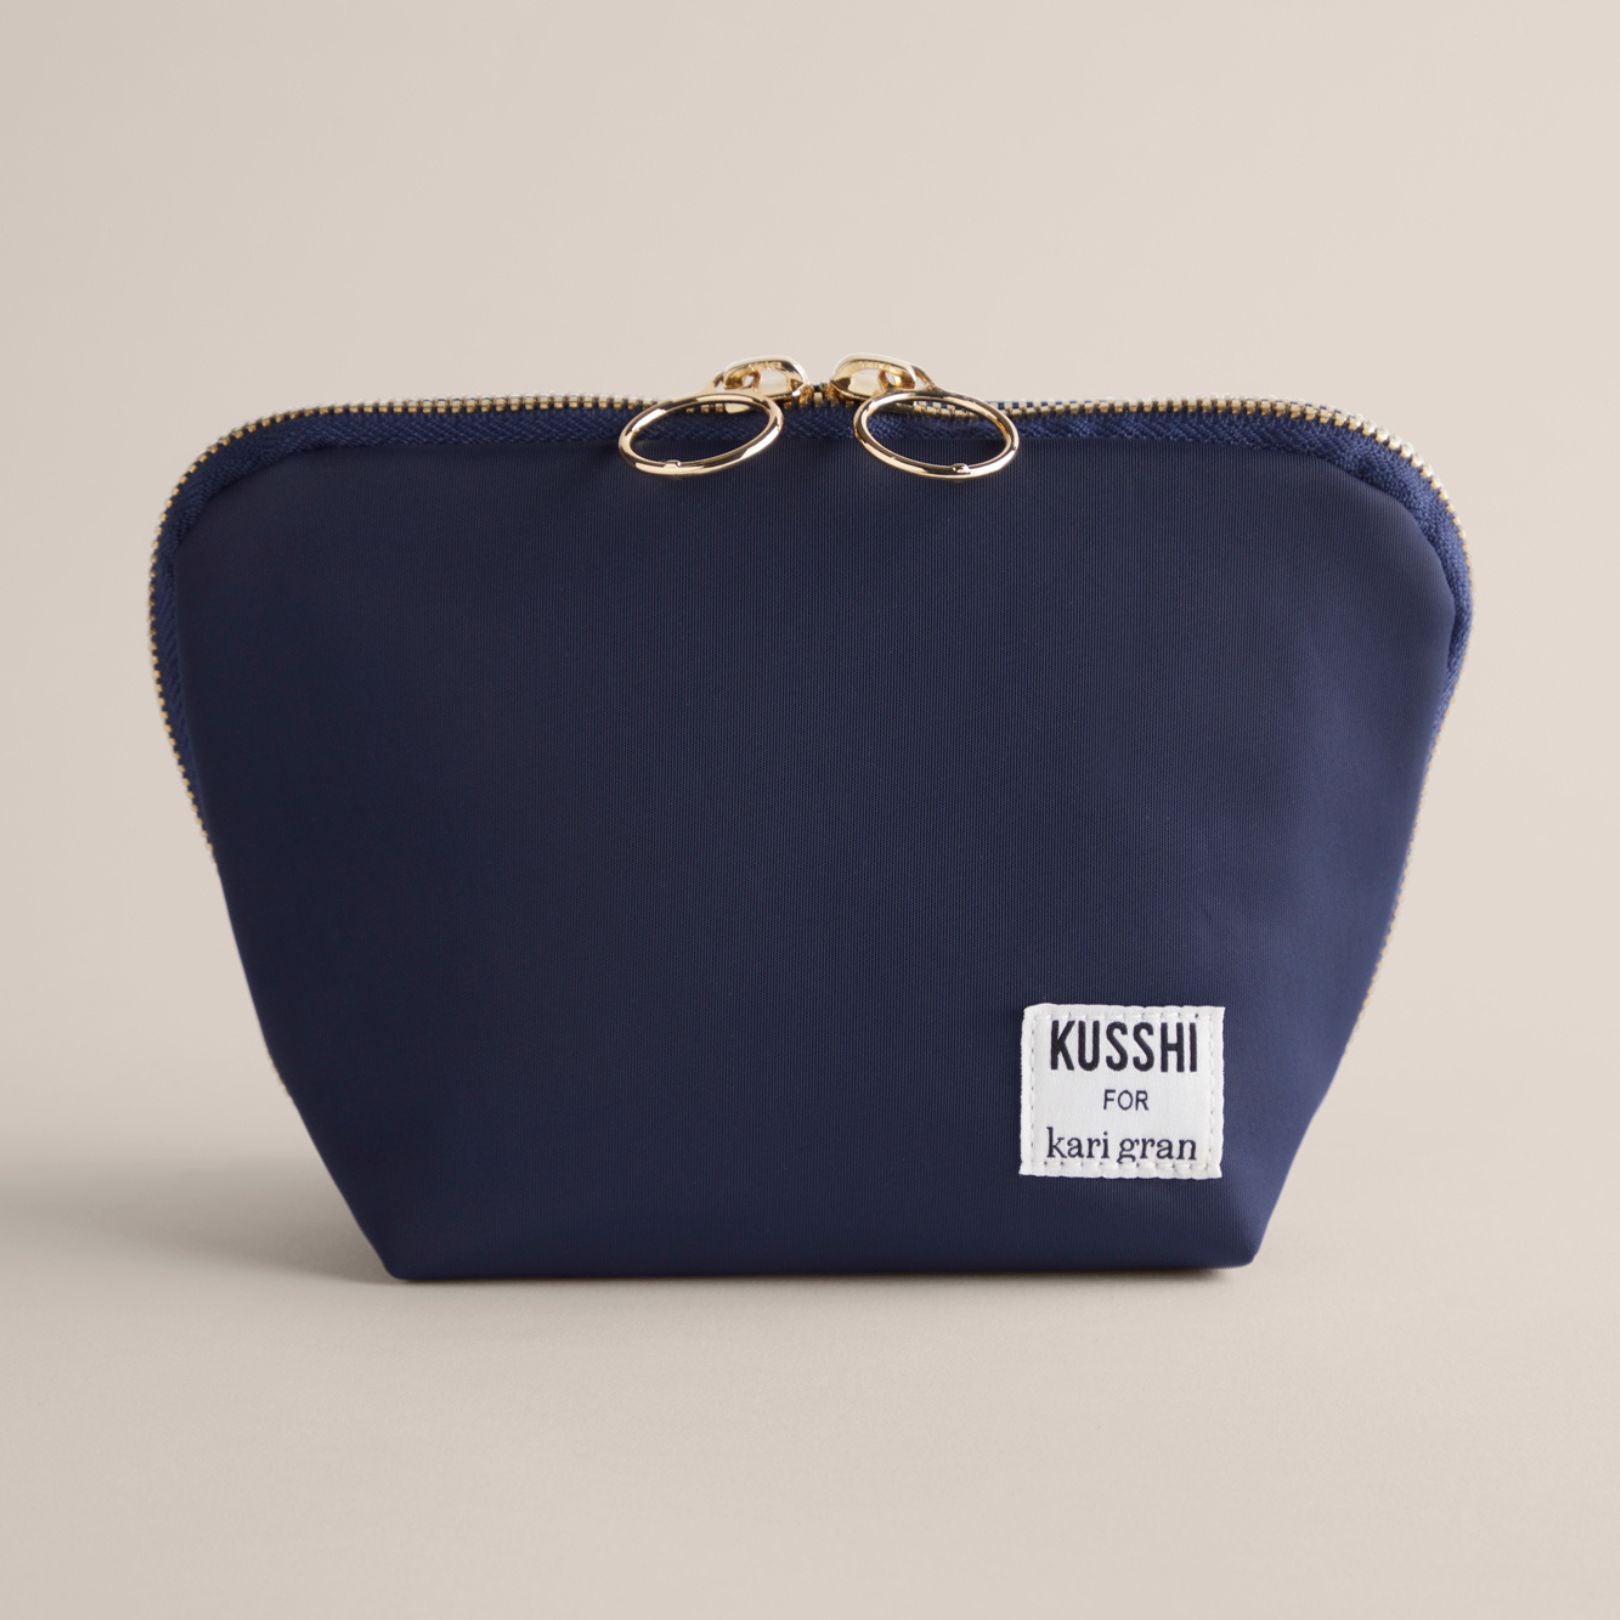 kusshi bag for kari gran. Navy bag on a beige background